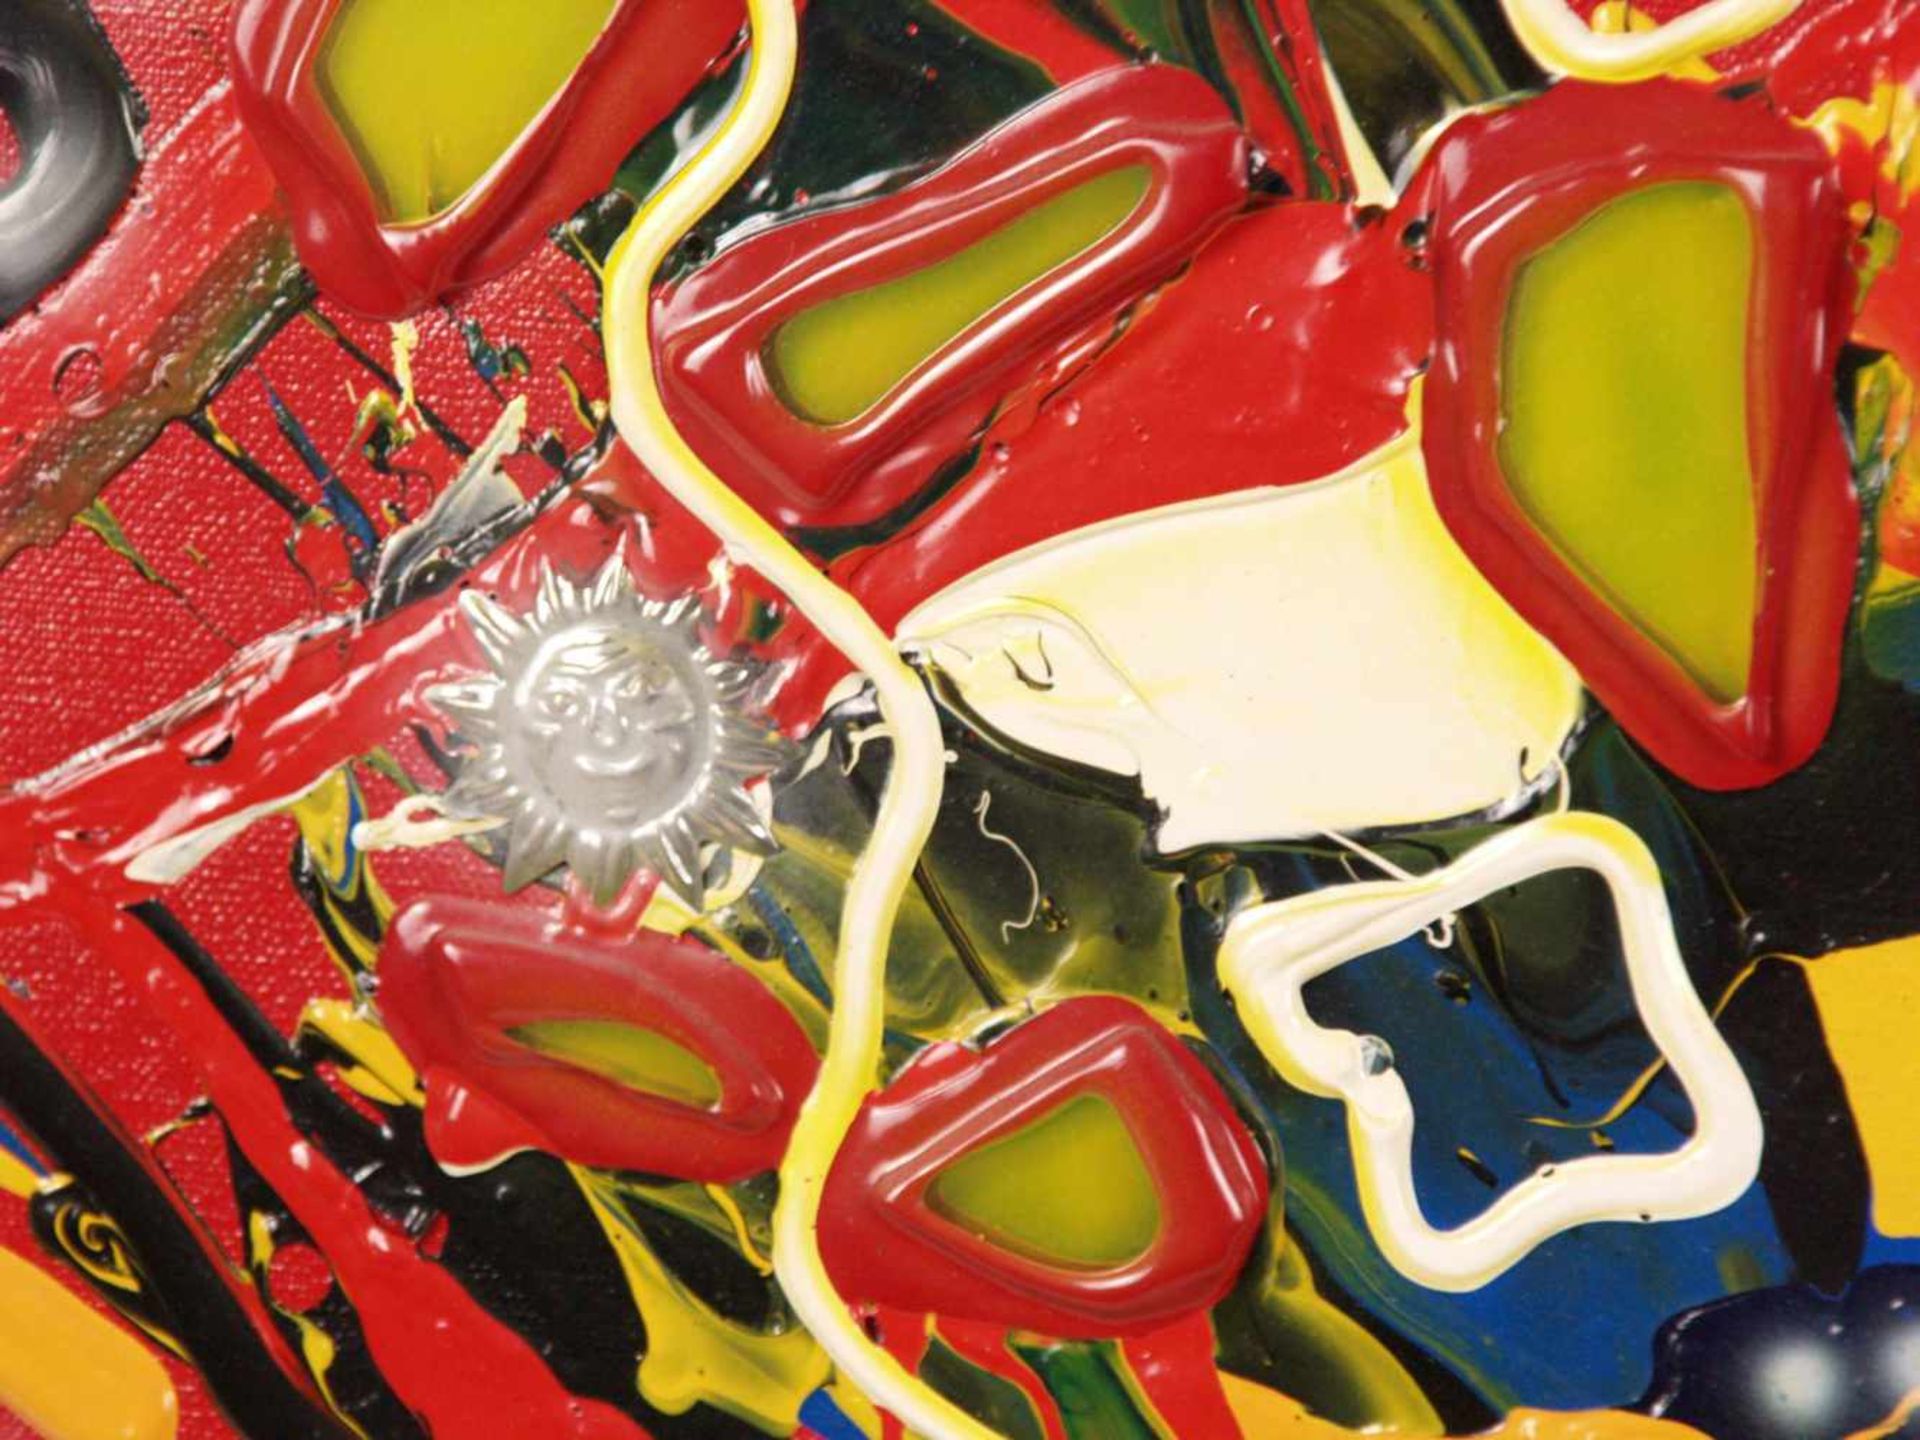 Micmac (Bea Schröder, zeitgenössische Künstlerin in Düsseldorf) - Abstraktion auf rotem Hintergrund, - Bild 3 aus 5